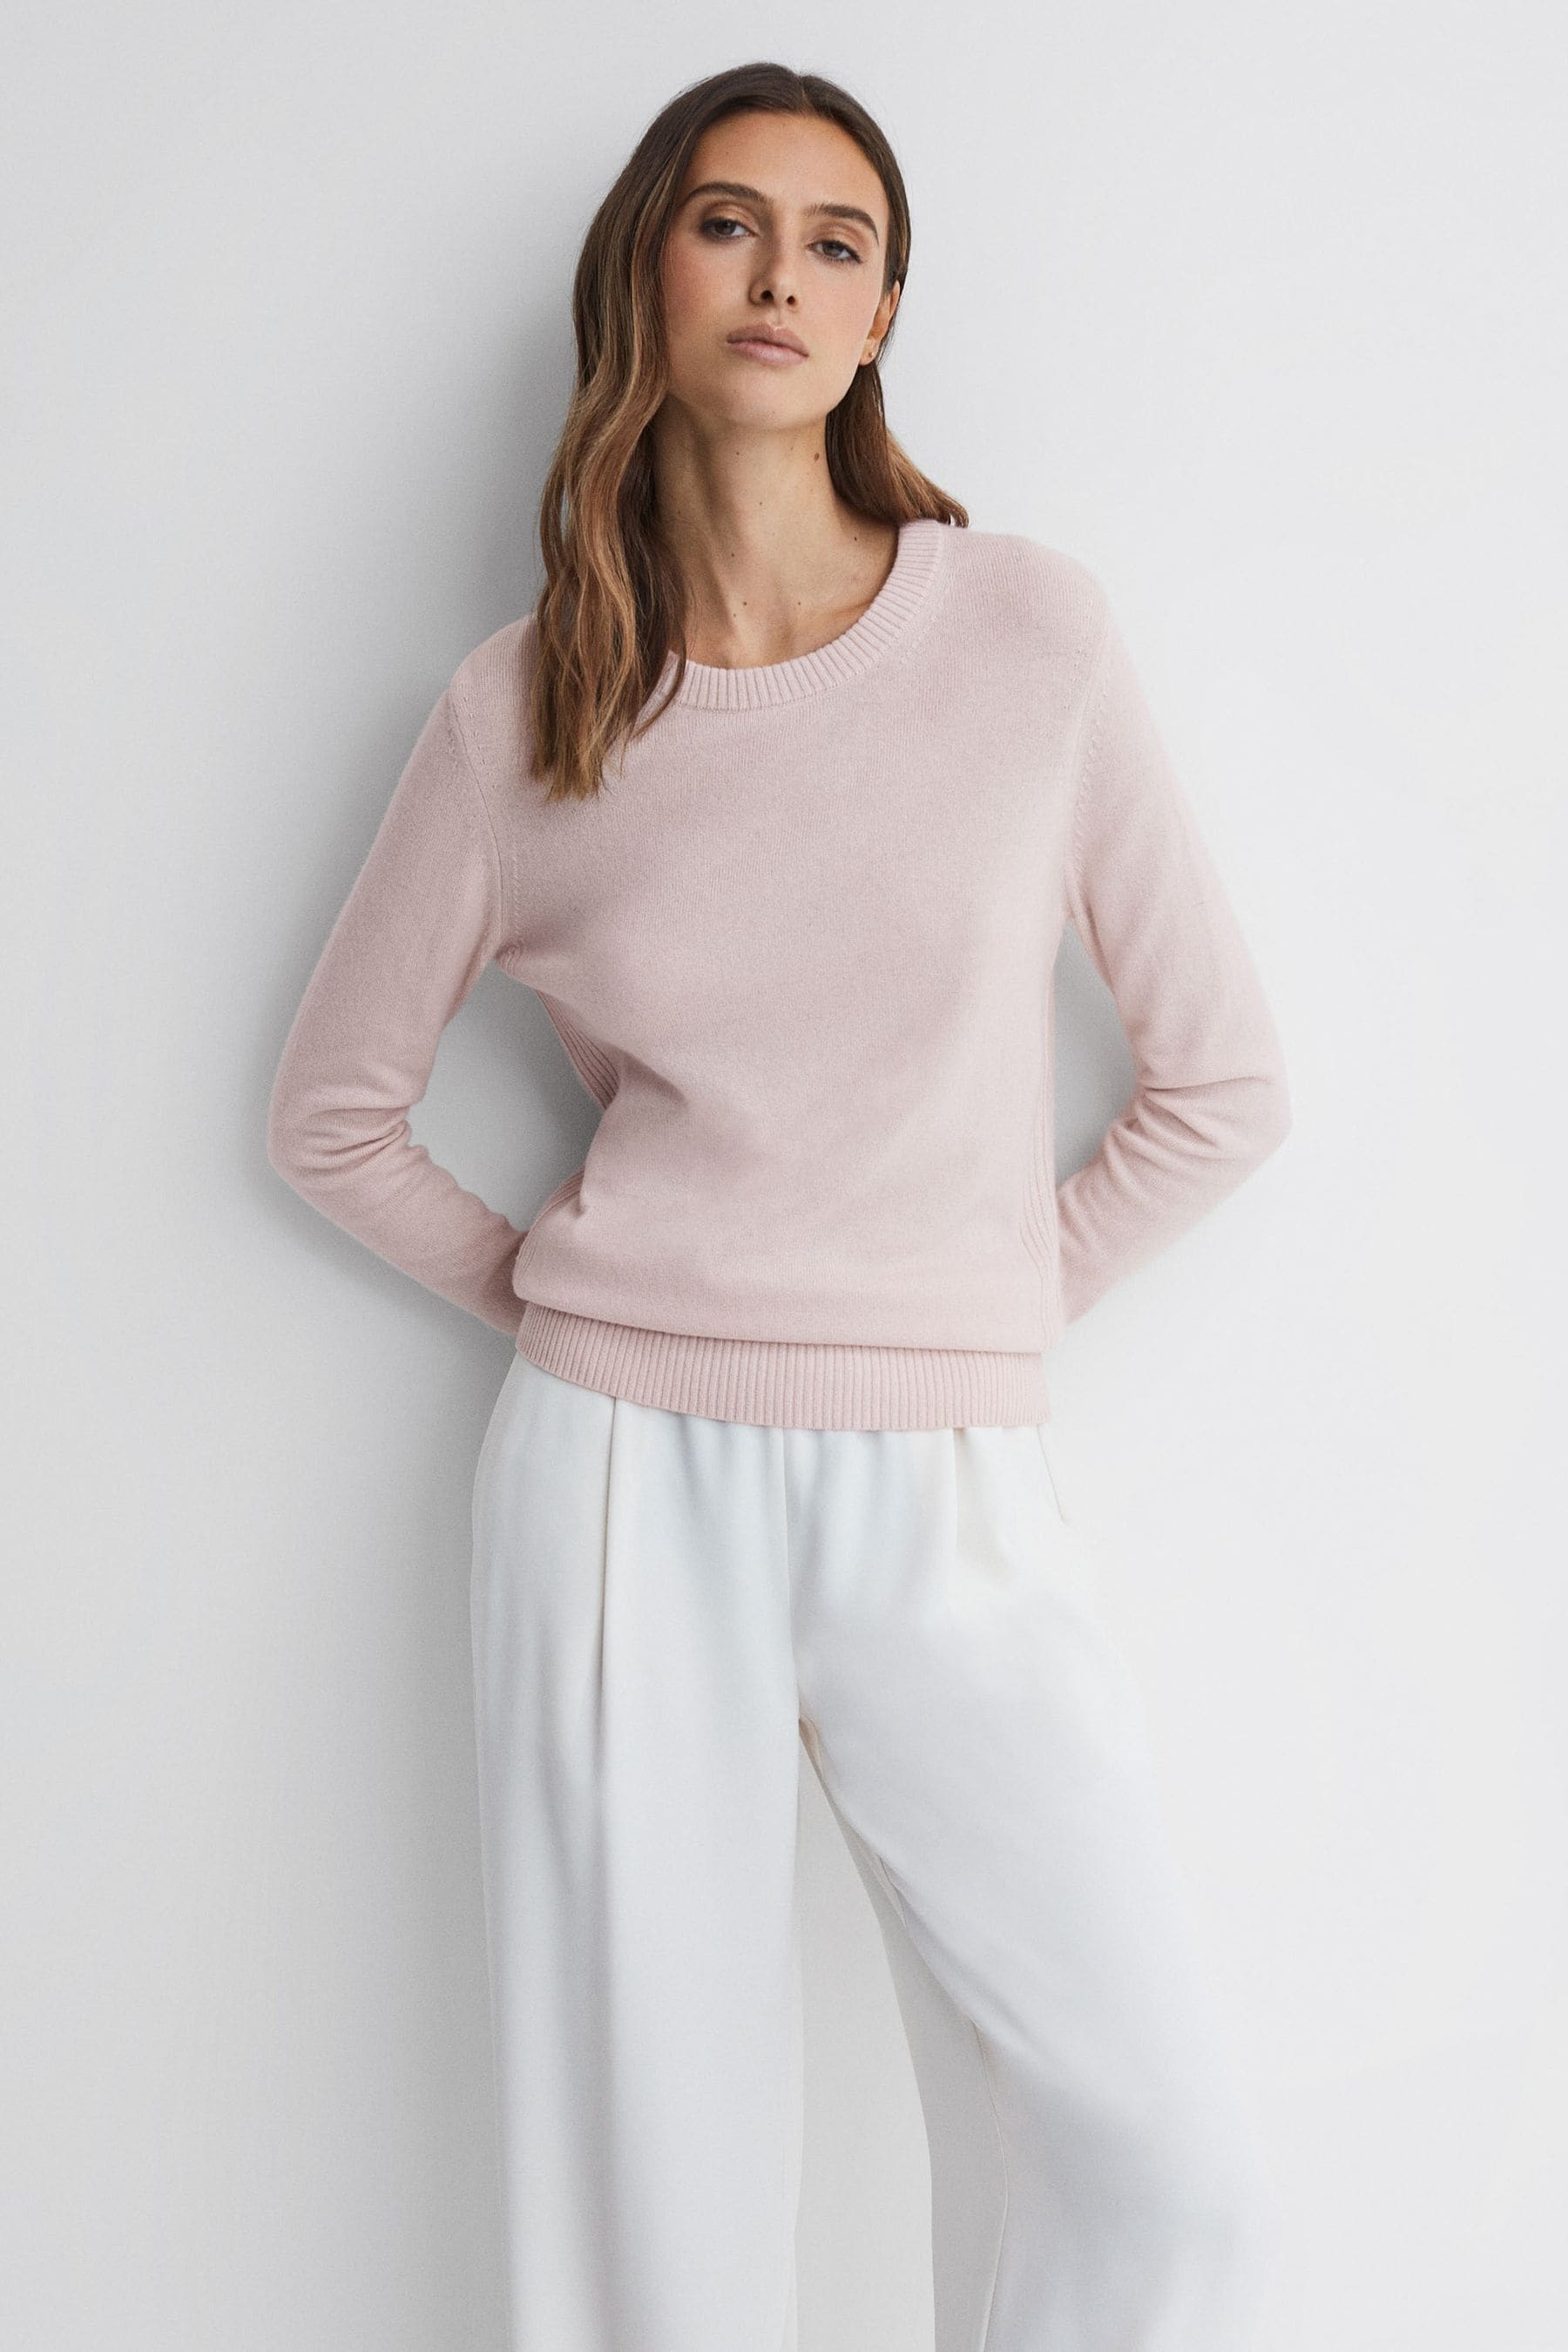 Addison - Light Pink Wool...